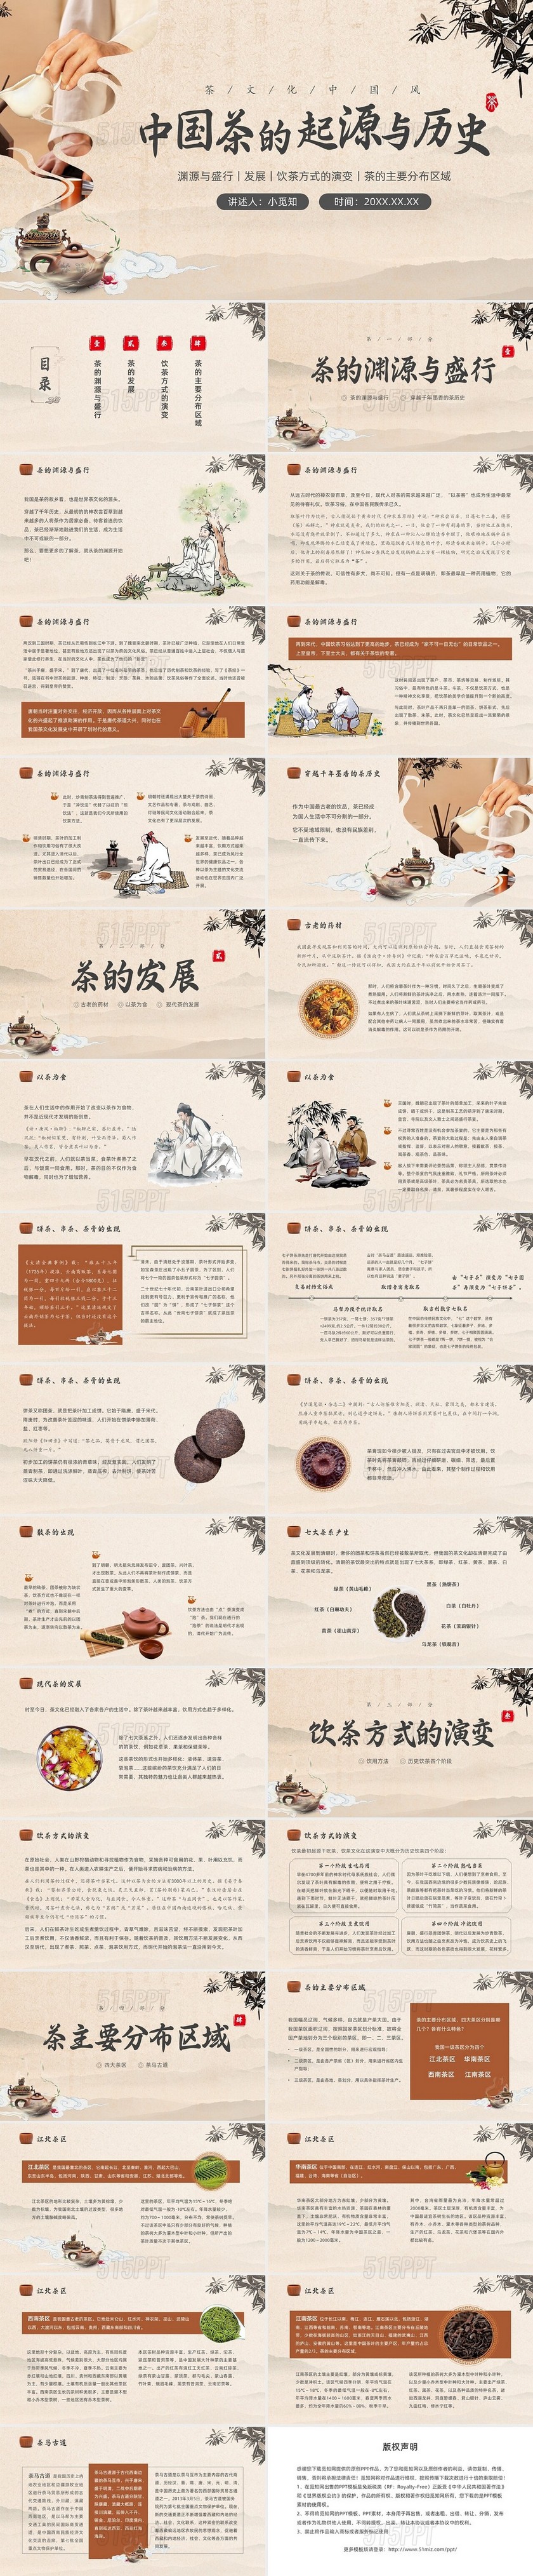 水墨山水中国风茶文化PPT中国传统文化